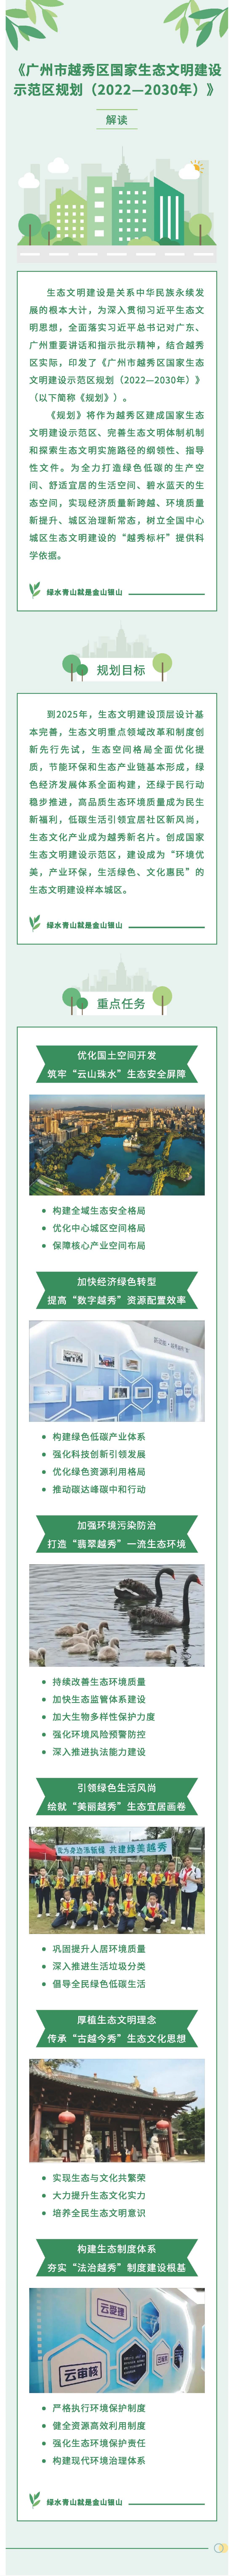 《广州市越秀区国家生态文明建设示范区规划（2022—2030年）》一图读懂.jpg